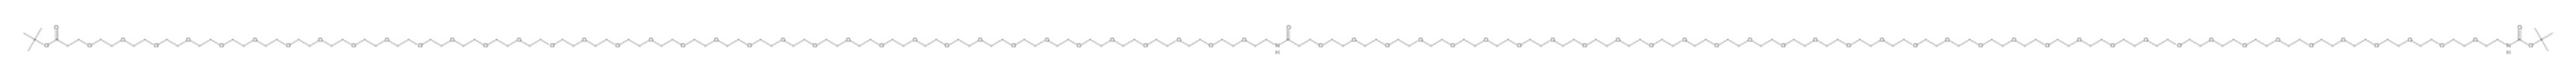 t-Boc-N-amido-PEG36-CONH-PEG36-t-butyl ester